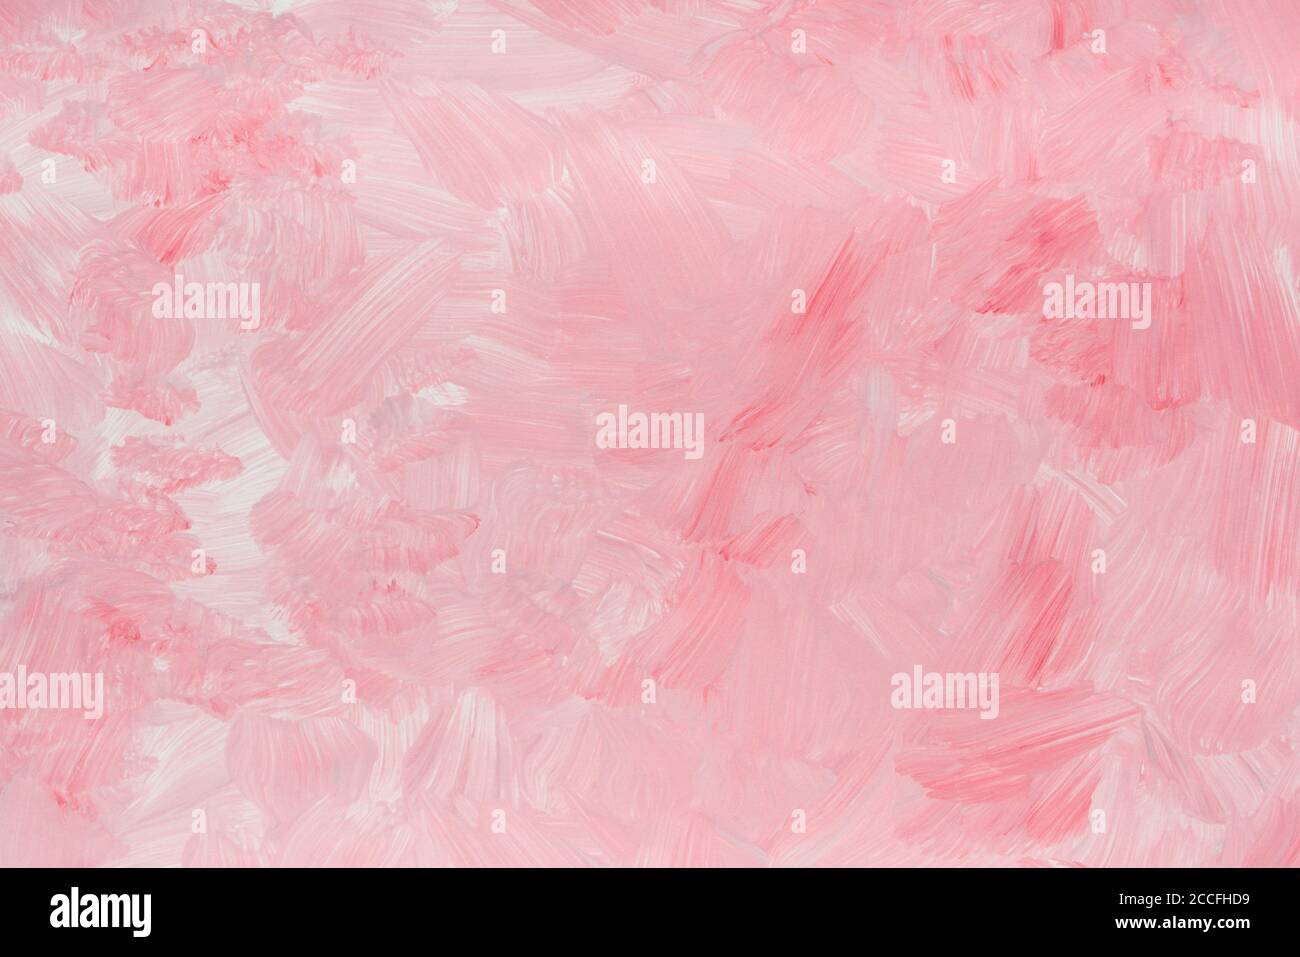 Texture de fond peint de couleur rose Banque D'Images